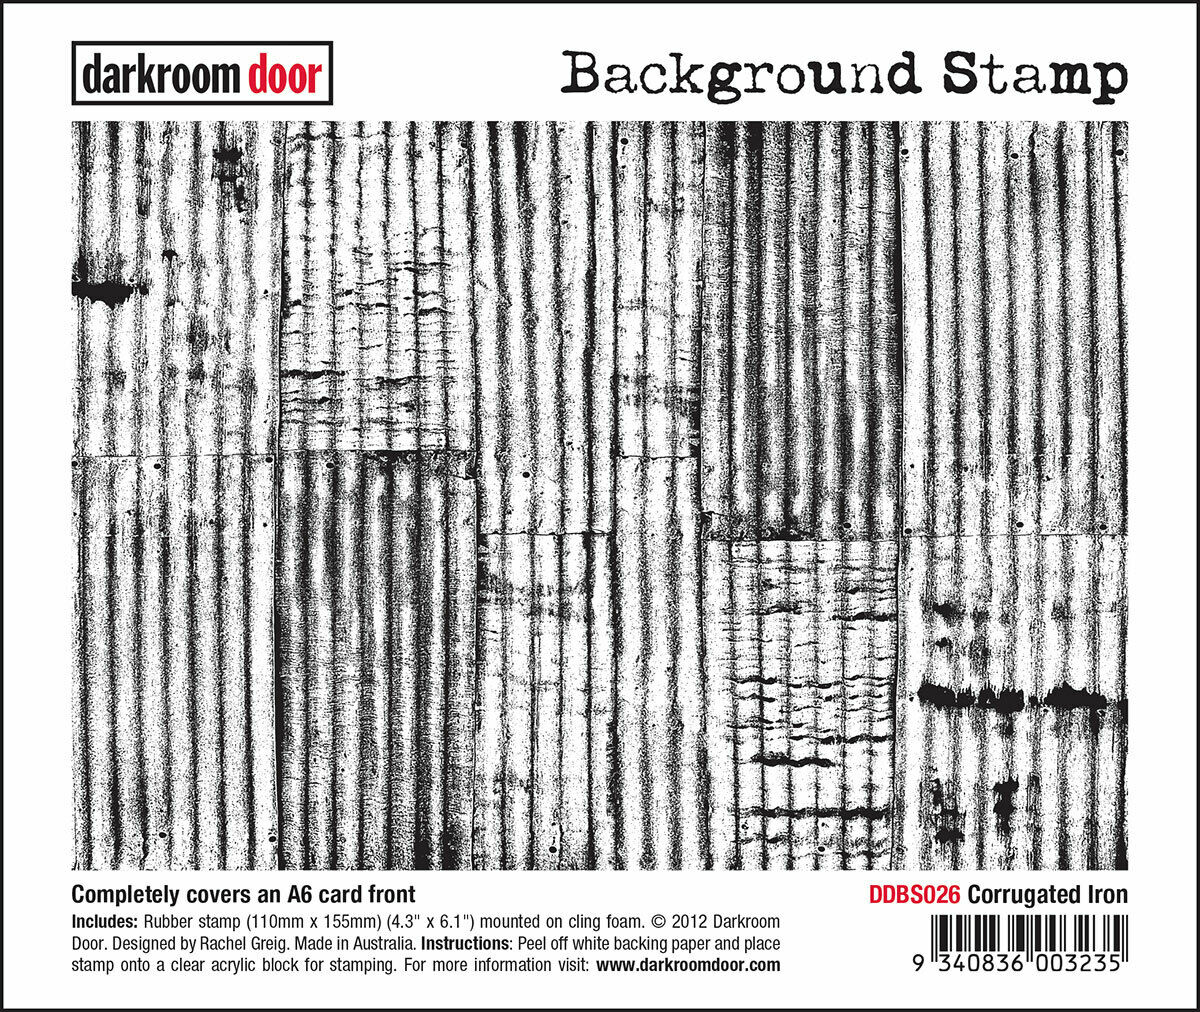 Darkroom Door Background Rubber Stamp Corrugated Iron 110mm x 155mm